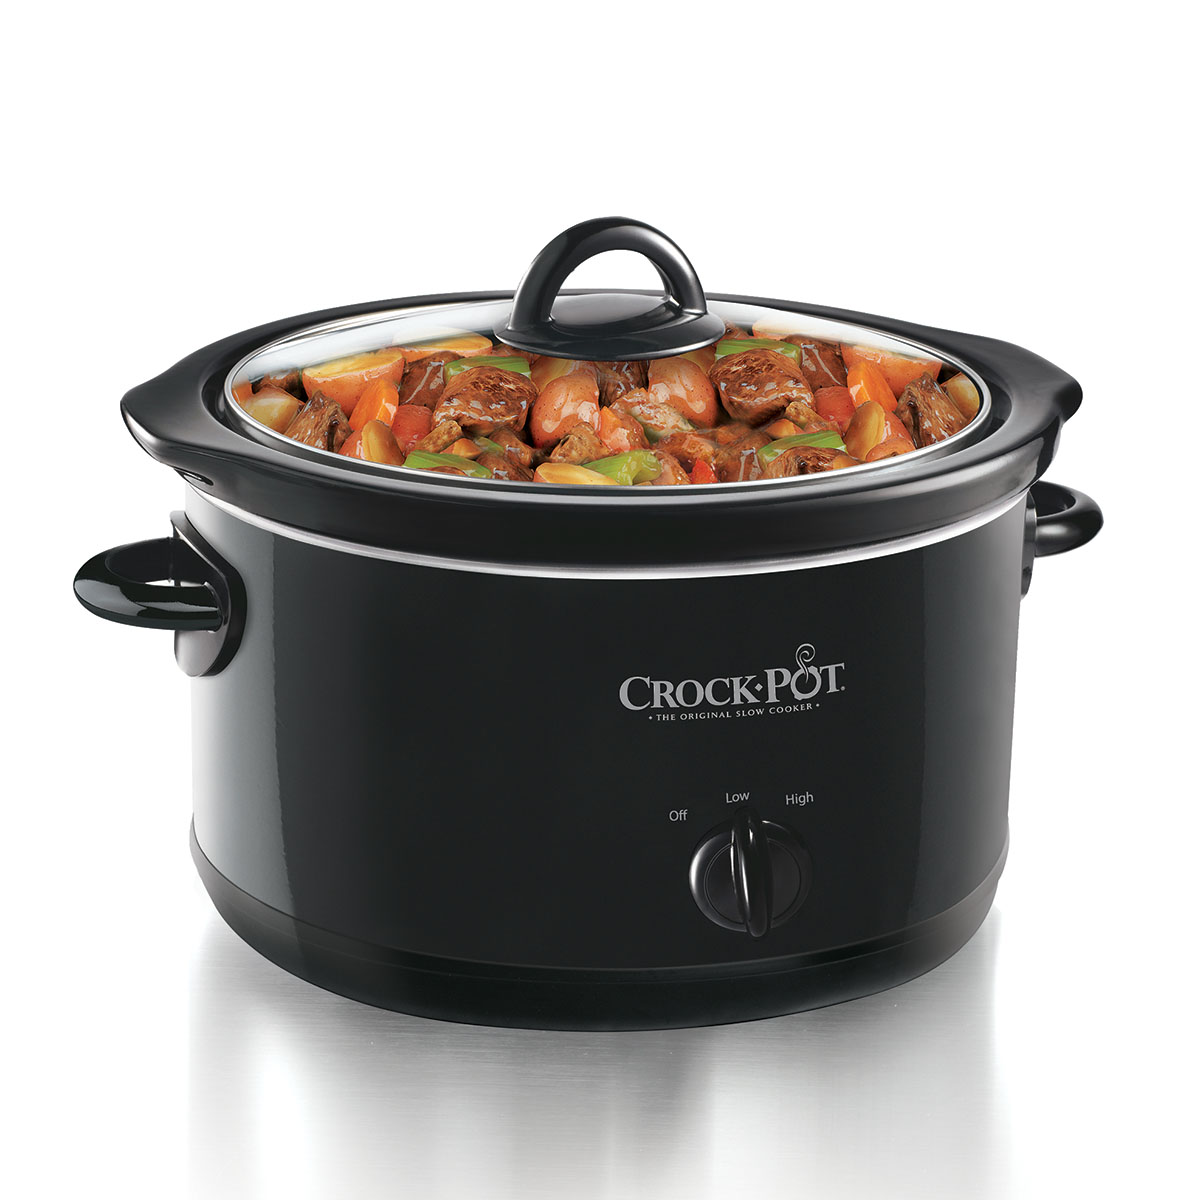 Crock-Pot 4 Quart Black Slow Cooker - image 1 of 2